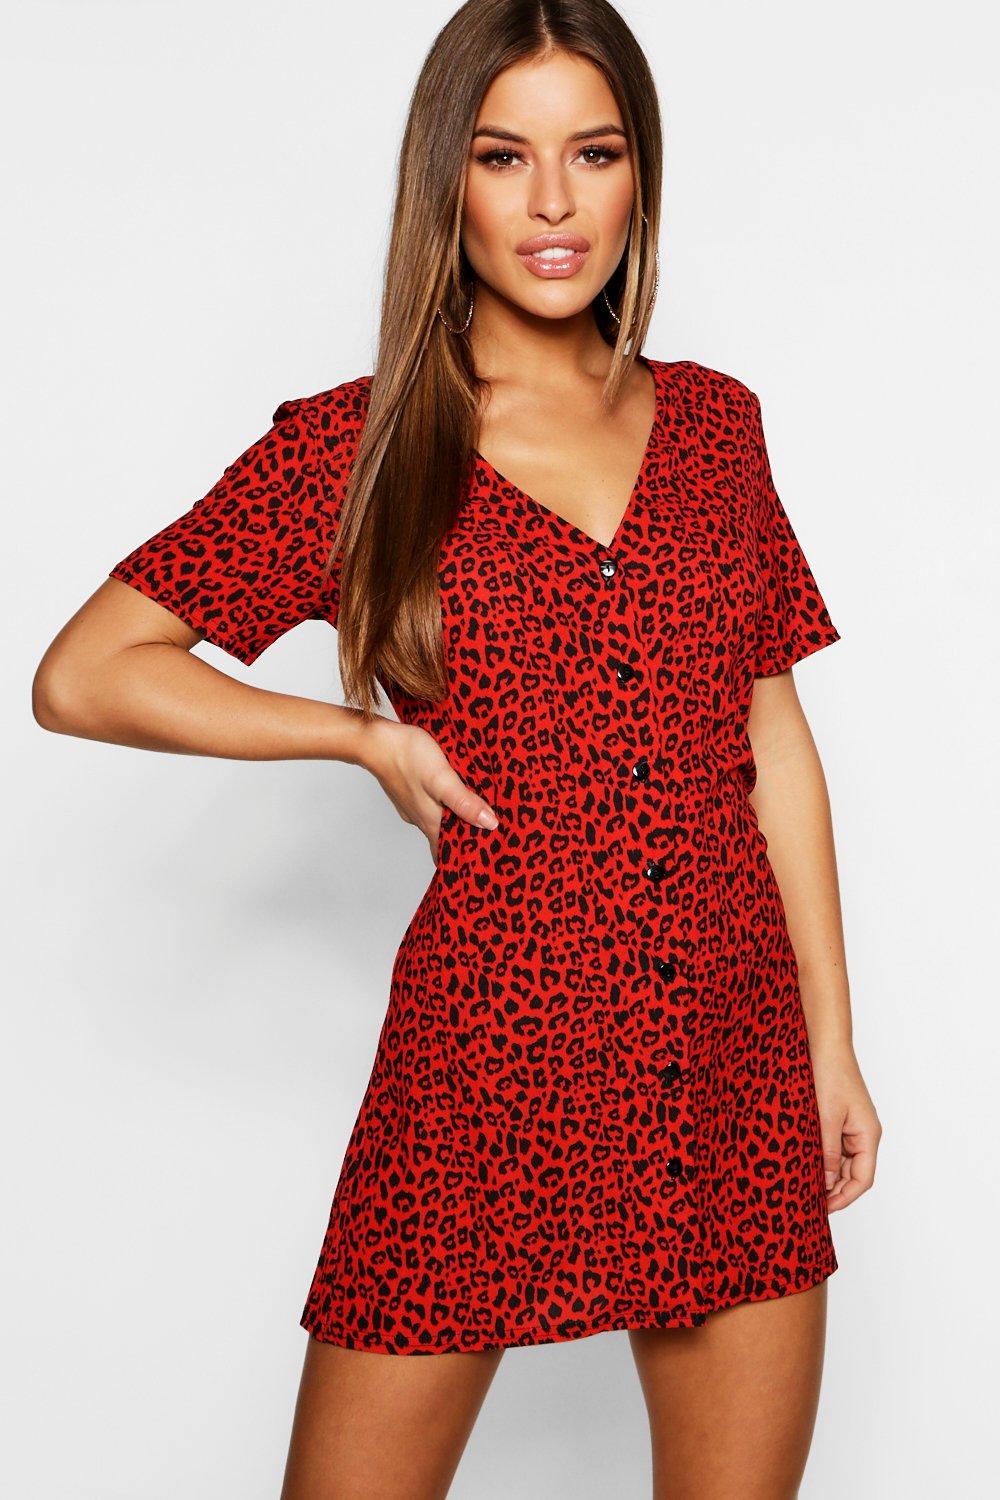 leopard print dress red